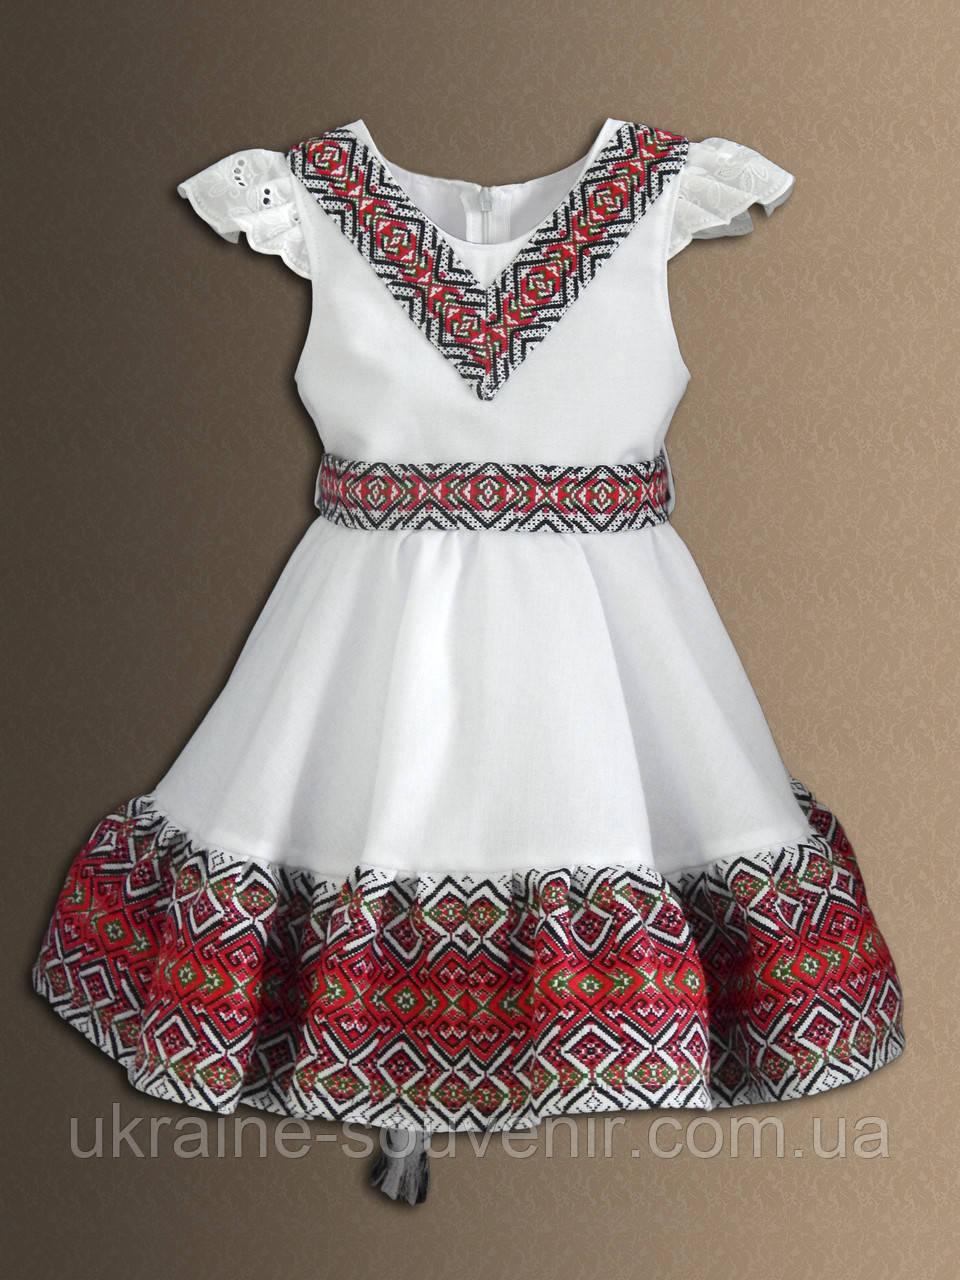 Дитяча сукня в українському стилі.